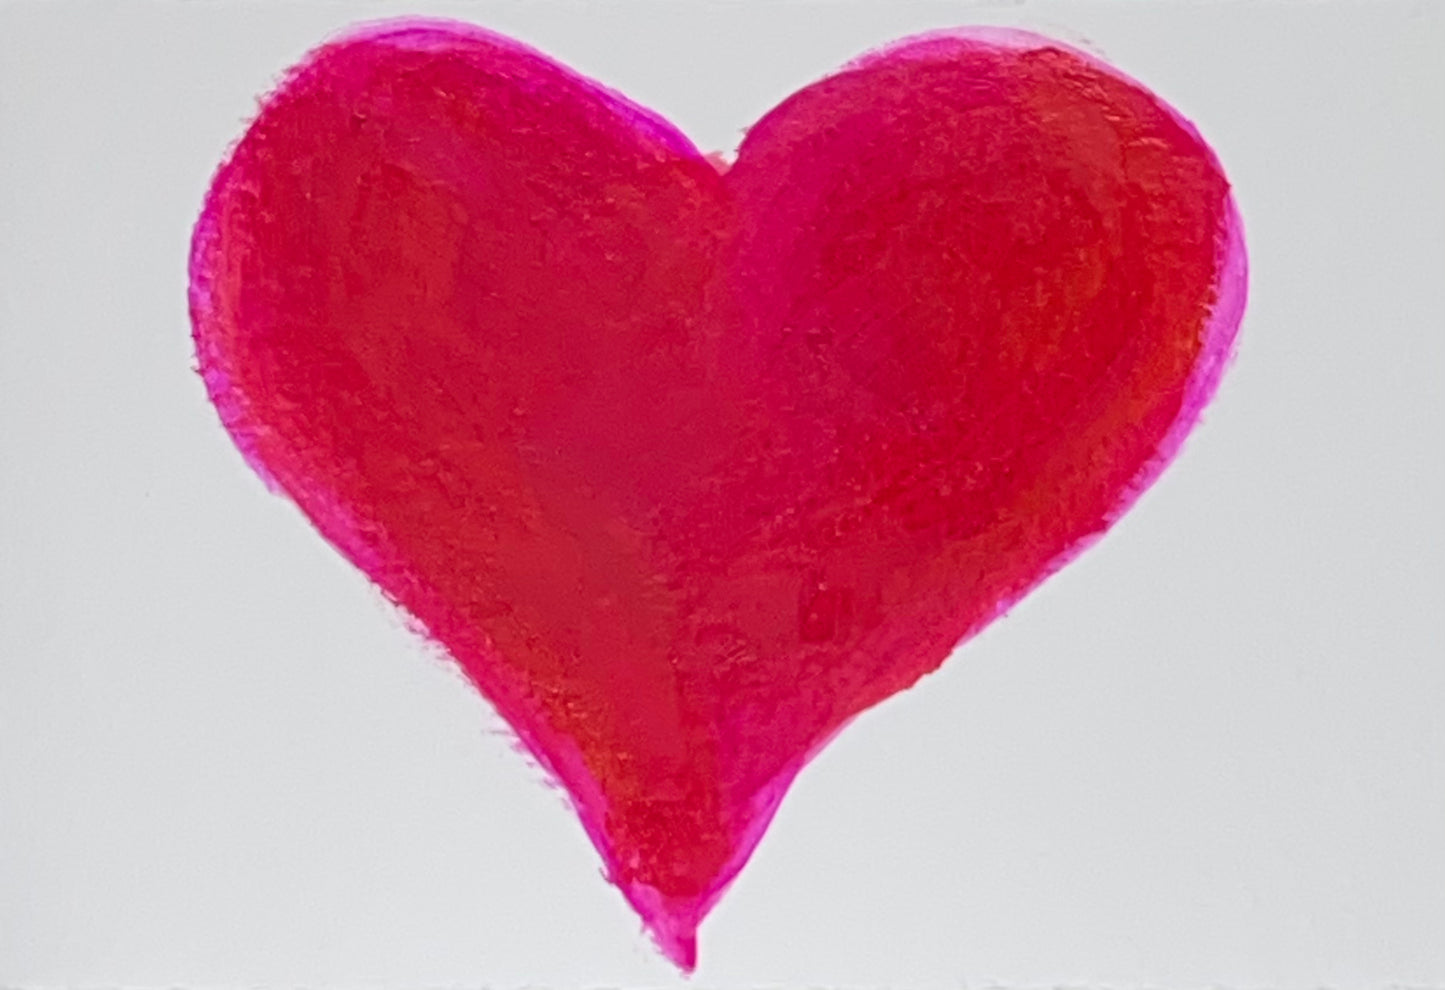 Sweetie - mini heart on paper (3x4.5)